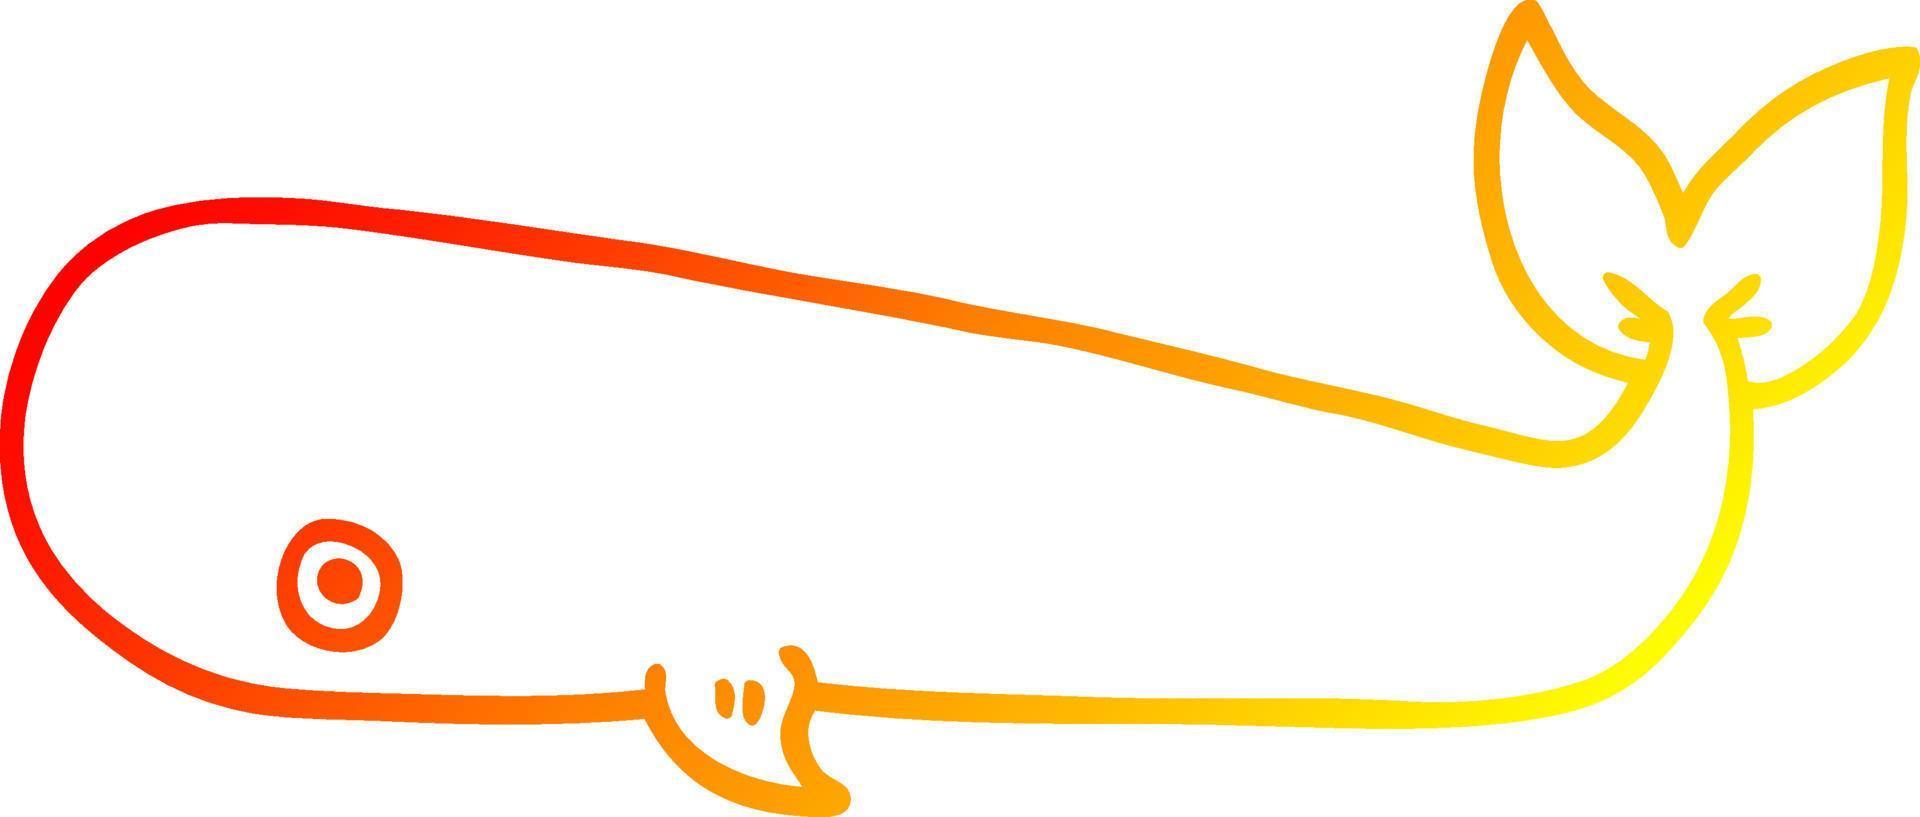 línea de gradiente cálido dibujo ballena de dibujos animados vector